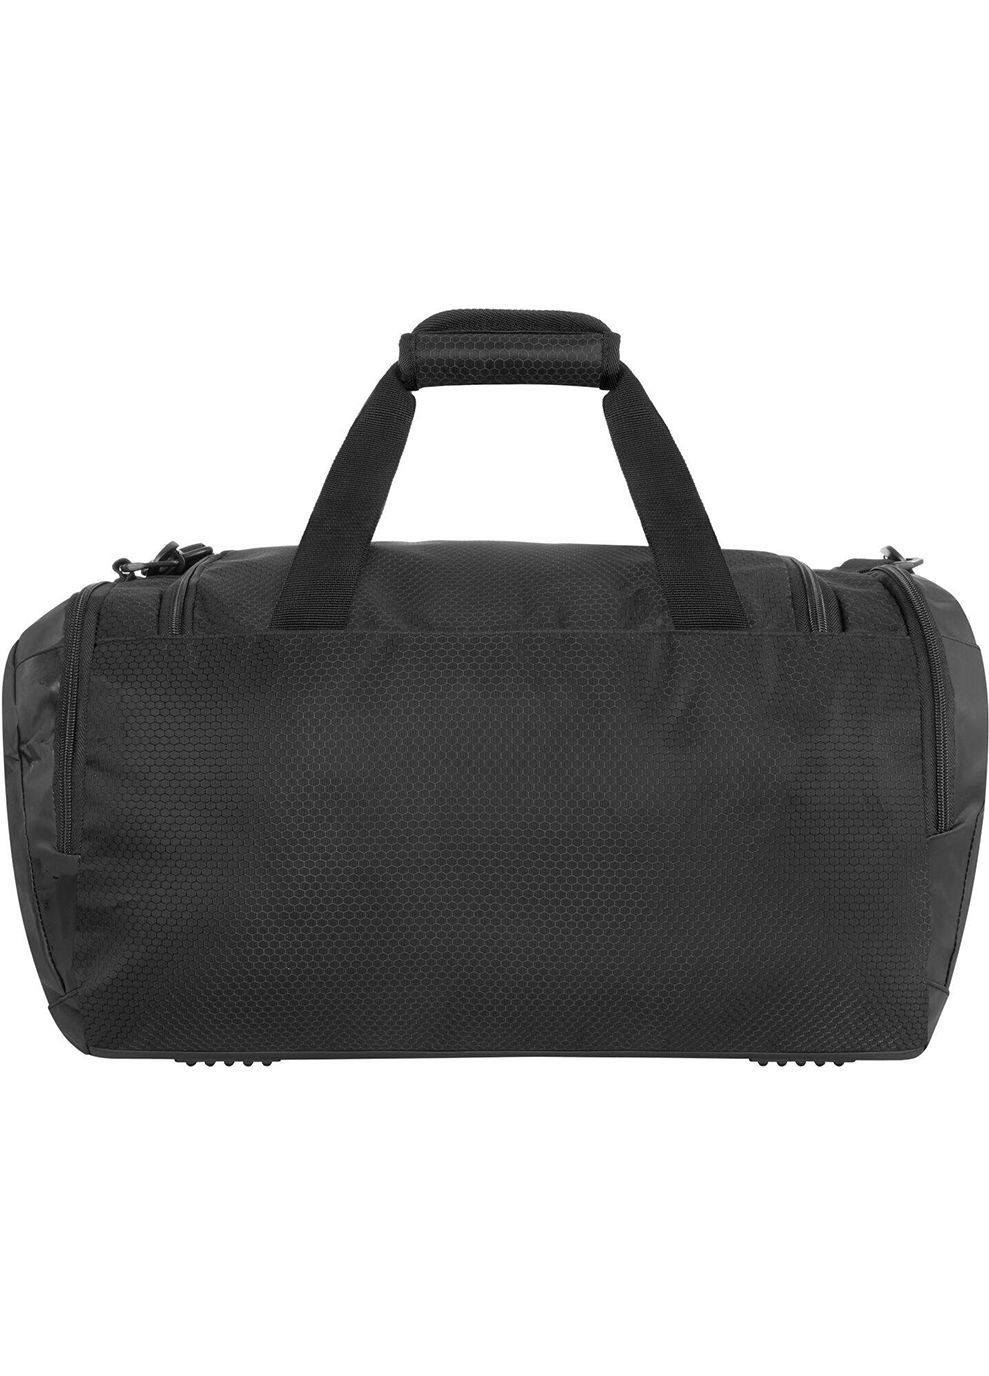 Cумка Duffel bag L 60148 Черный 55x26x30см Aqua Speed (282616653)